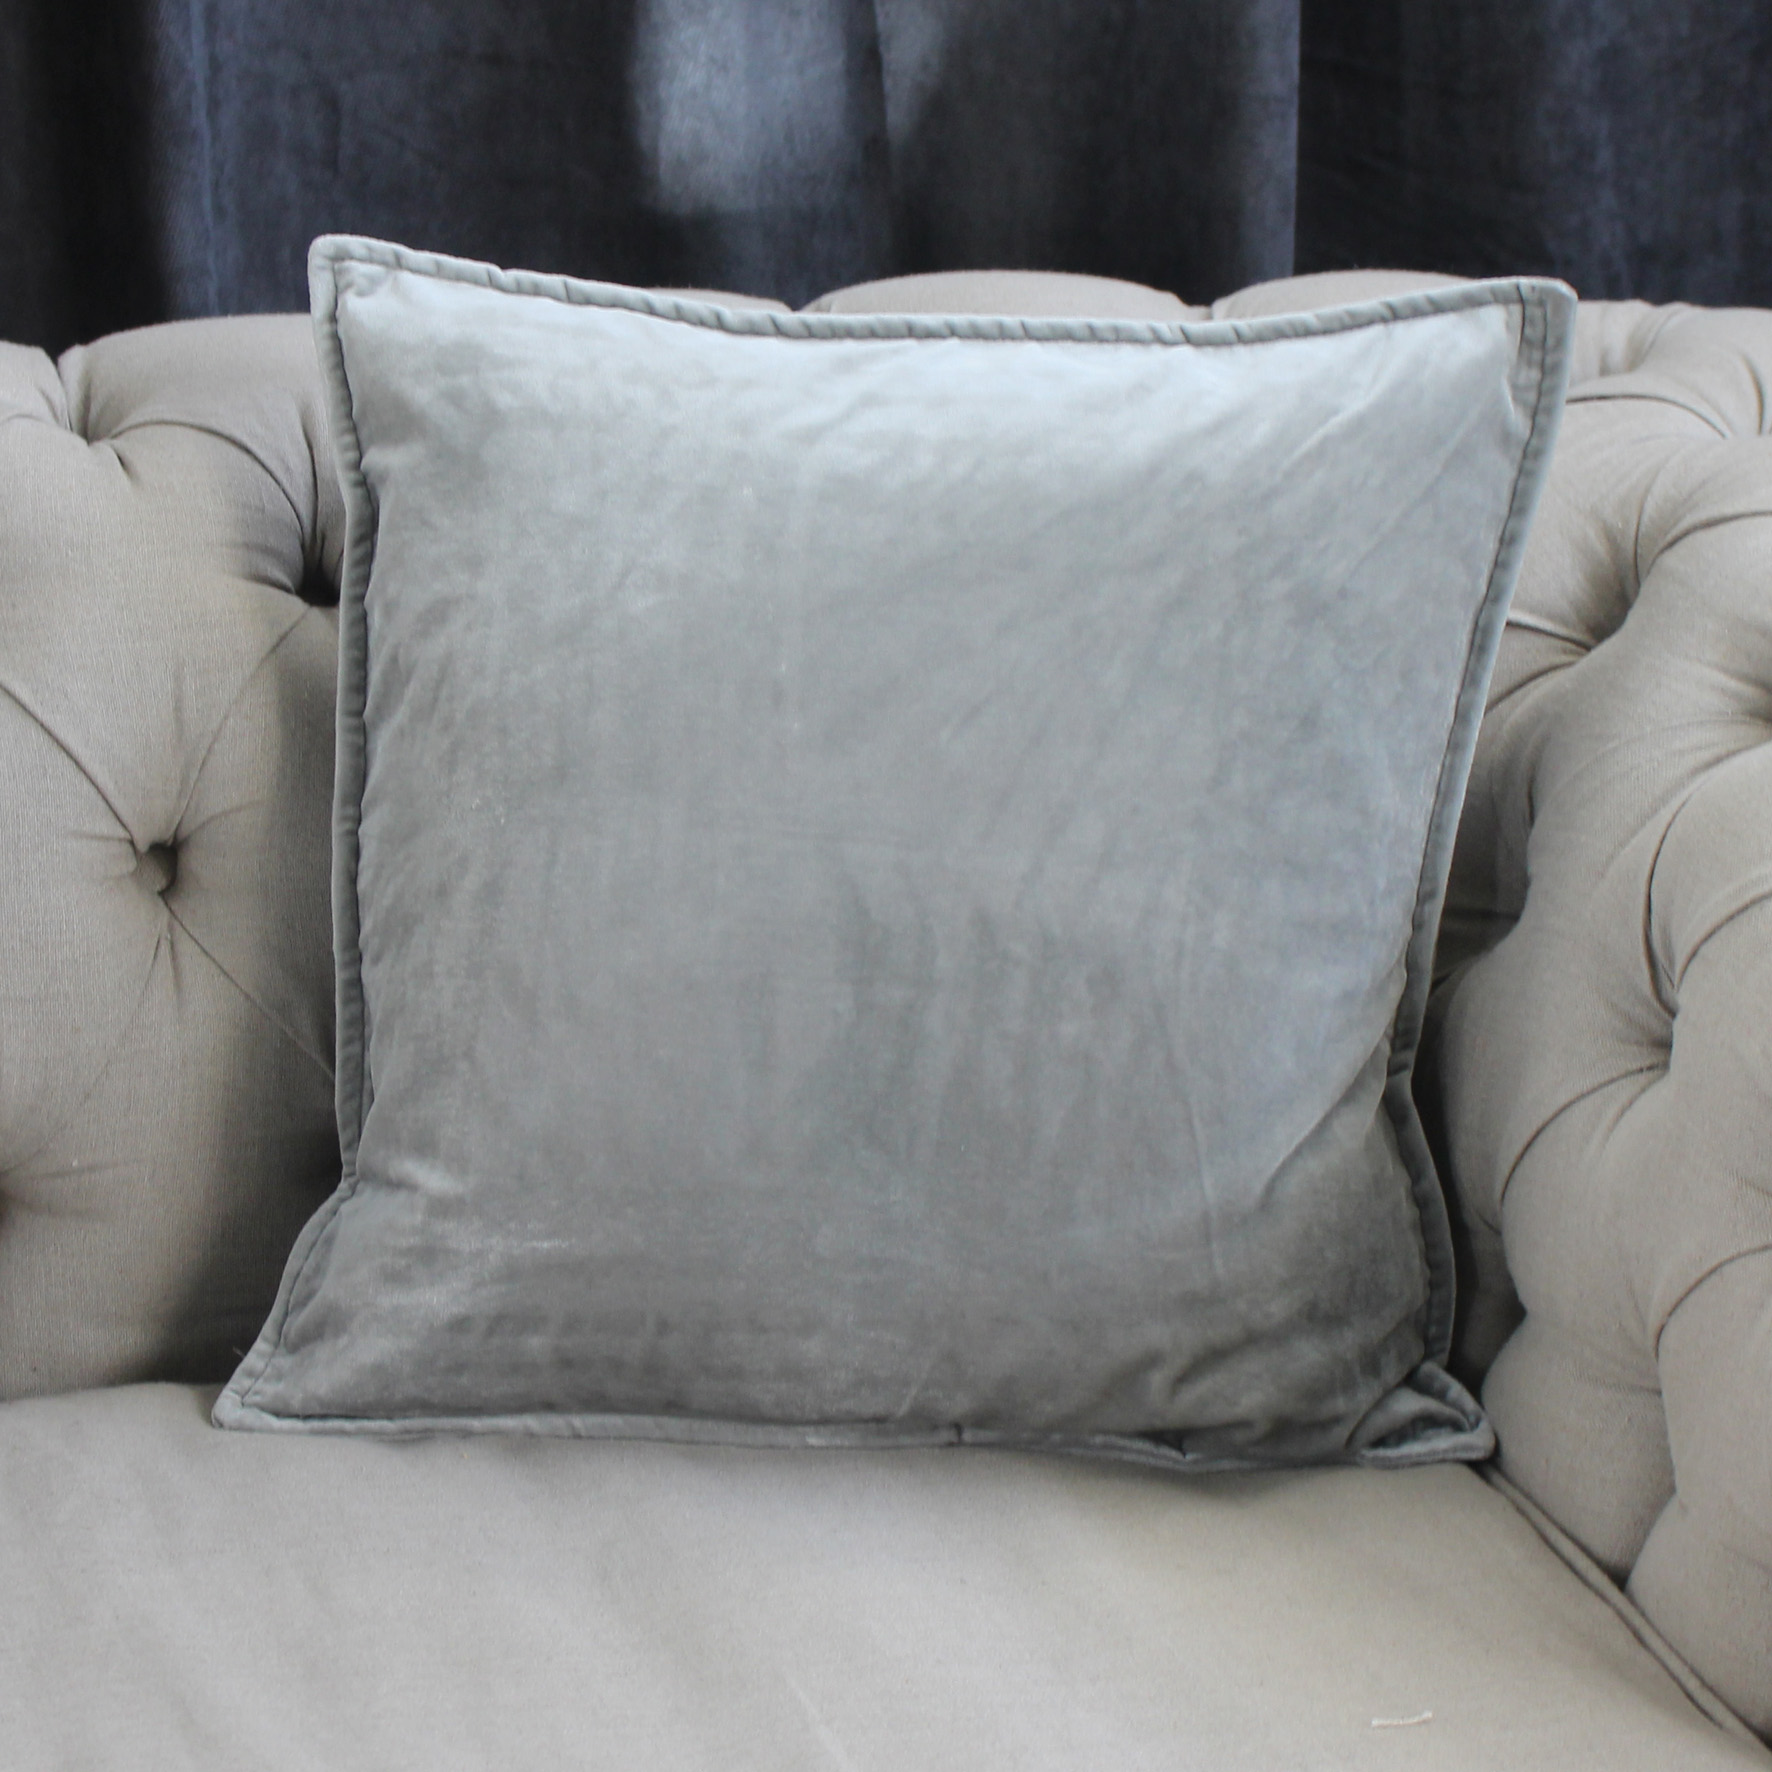 Silver Velvet Cushion